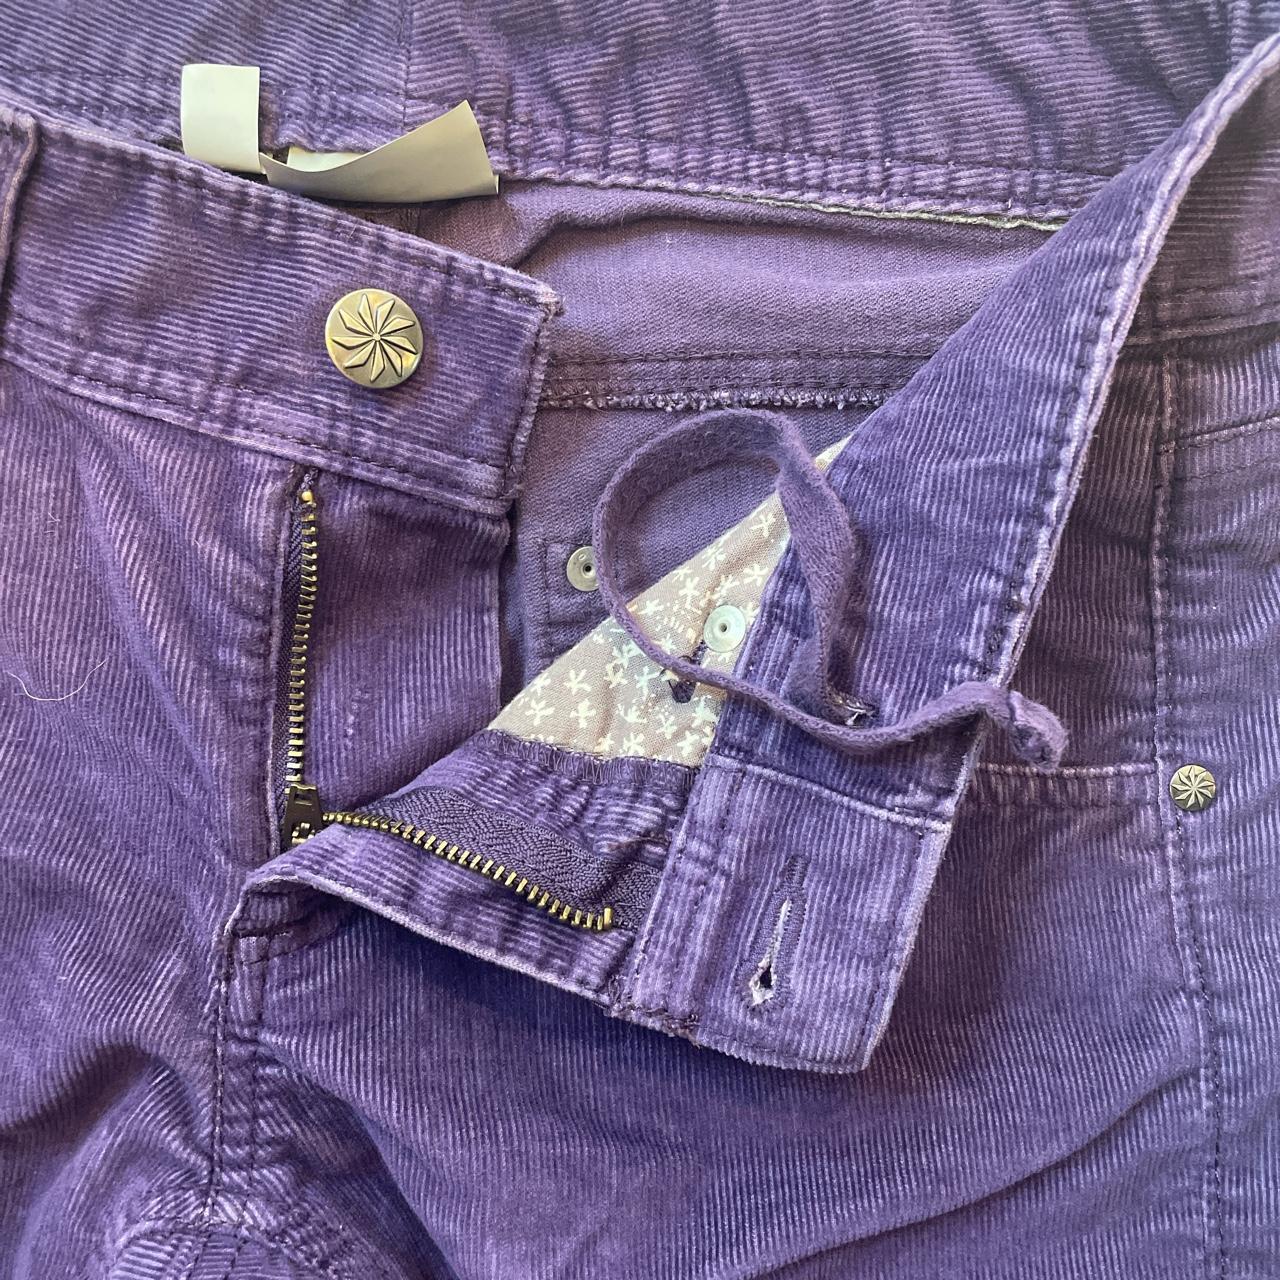 Athleta size 10 purple corduroy pants in nice - Depop